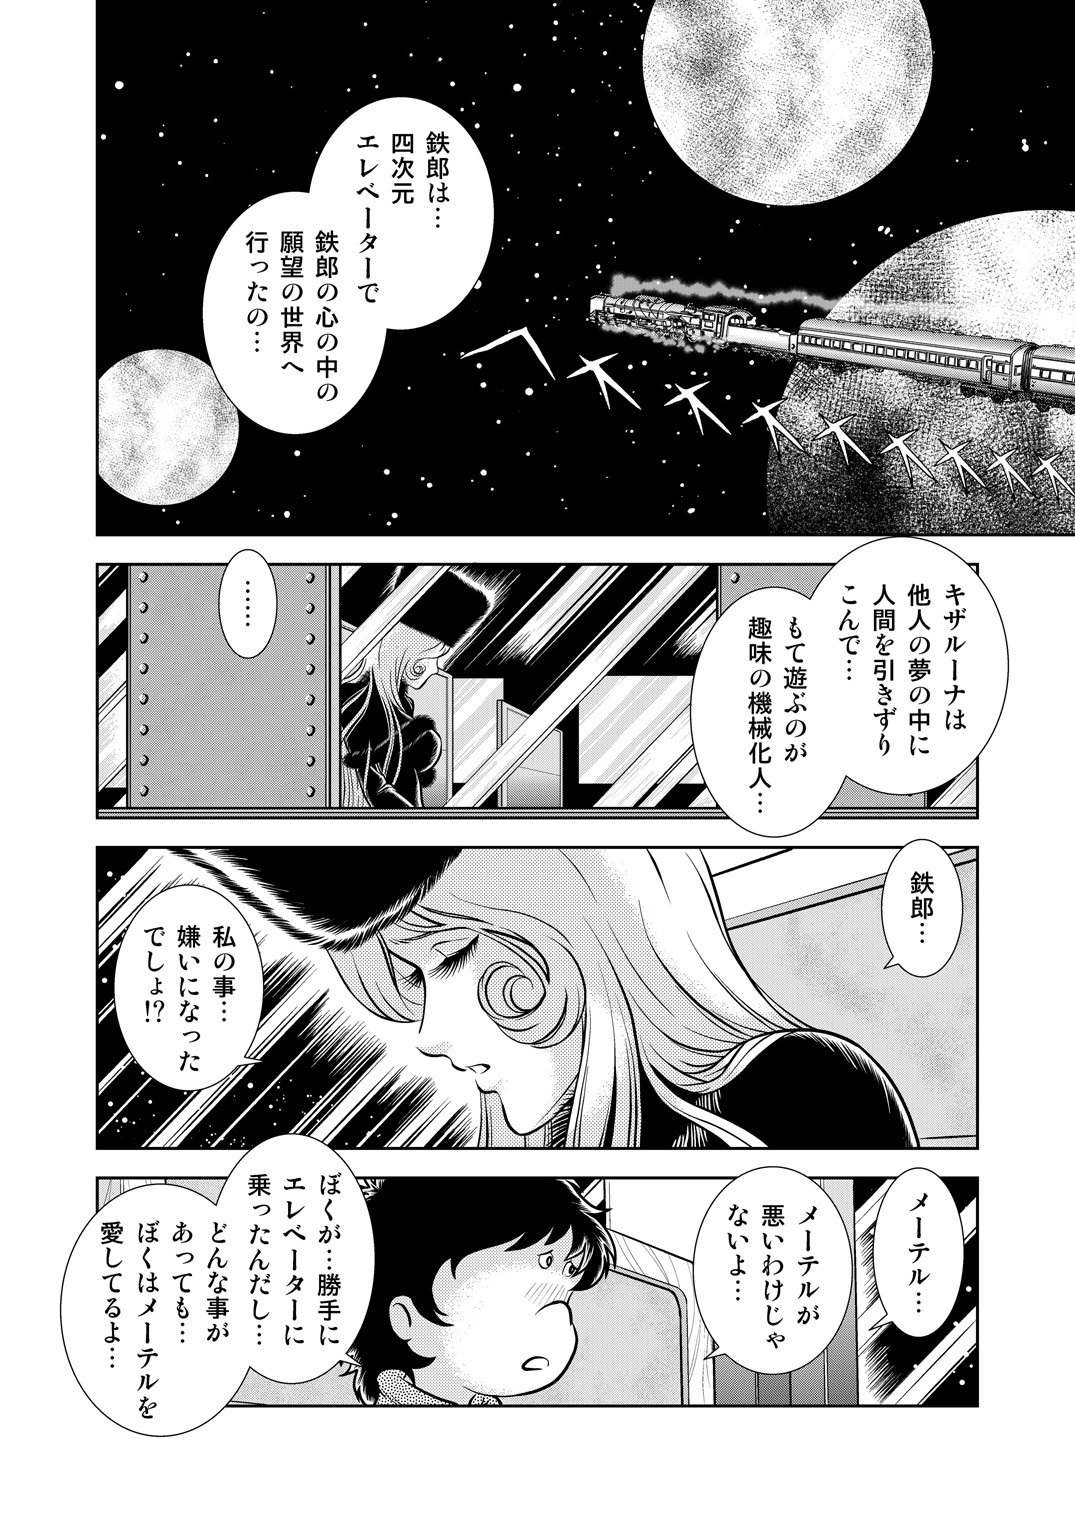 [かぐや姫] Maetel Story 8 (銀河鉄道999)